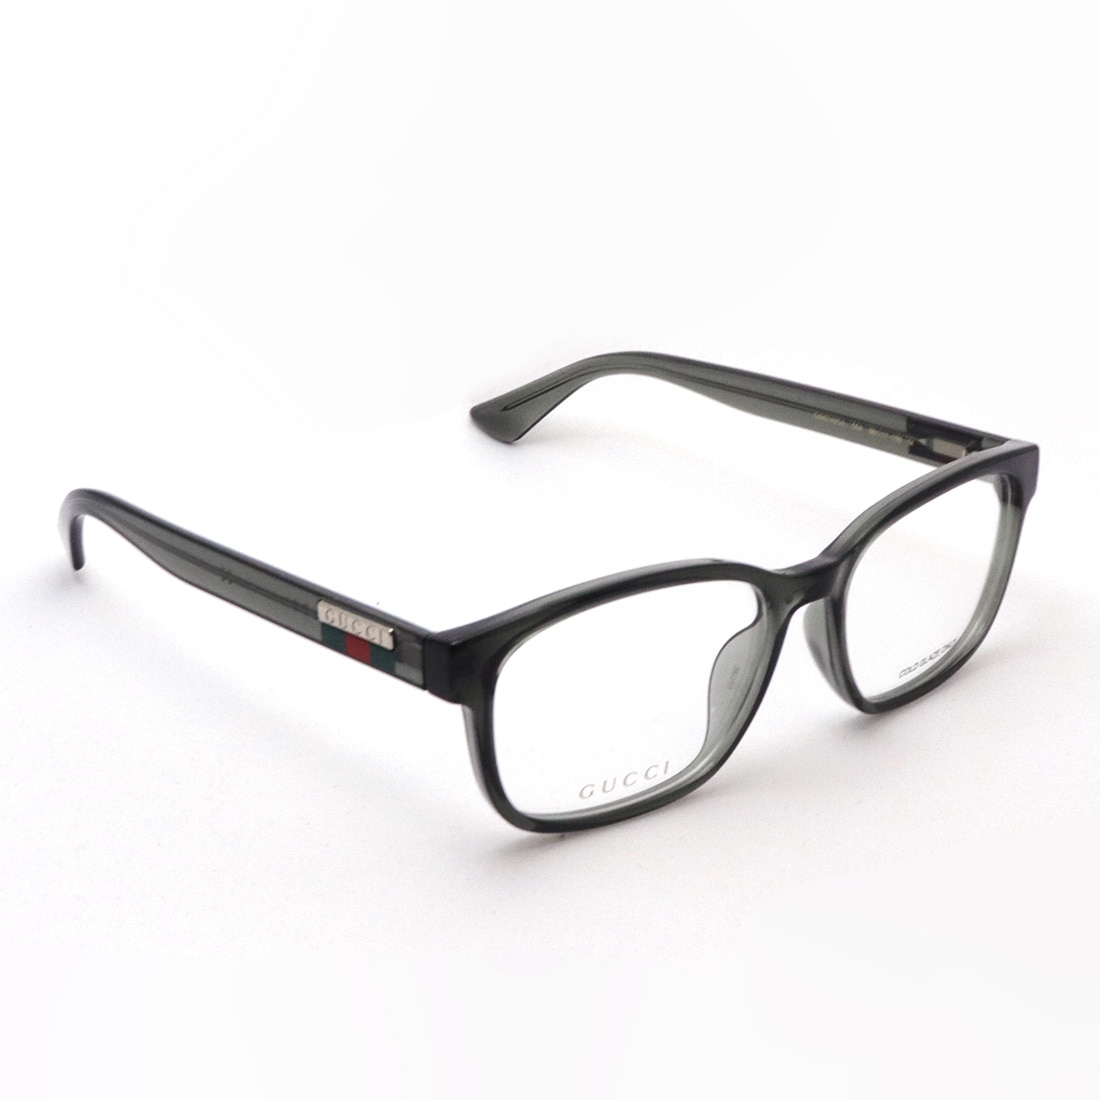 グッチ メガネ 眼鏡 GUCCI GG0549O 008 比較対照価格40,700 円 :u-gu8